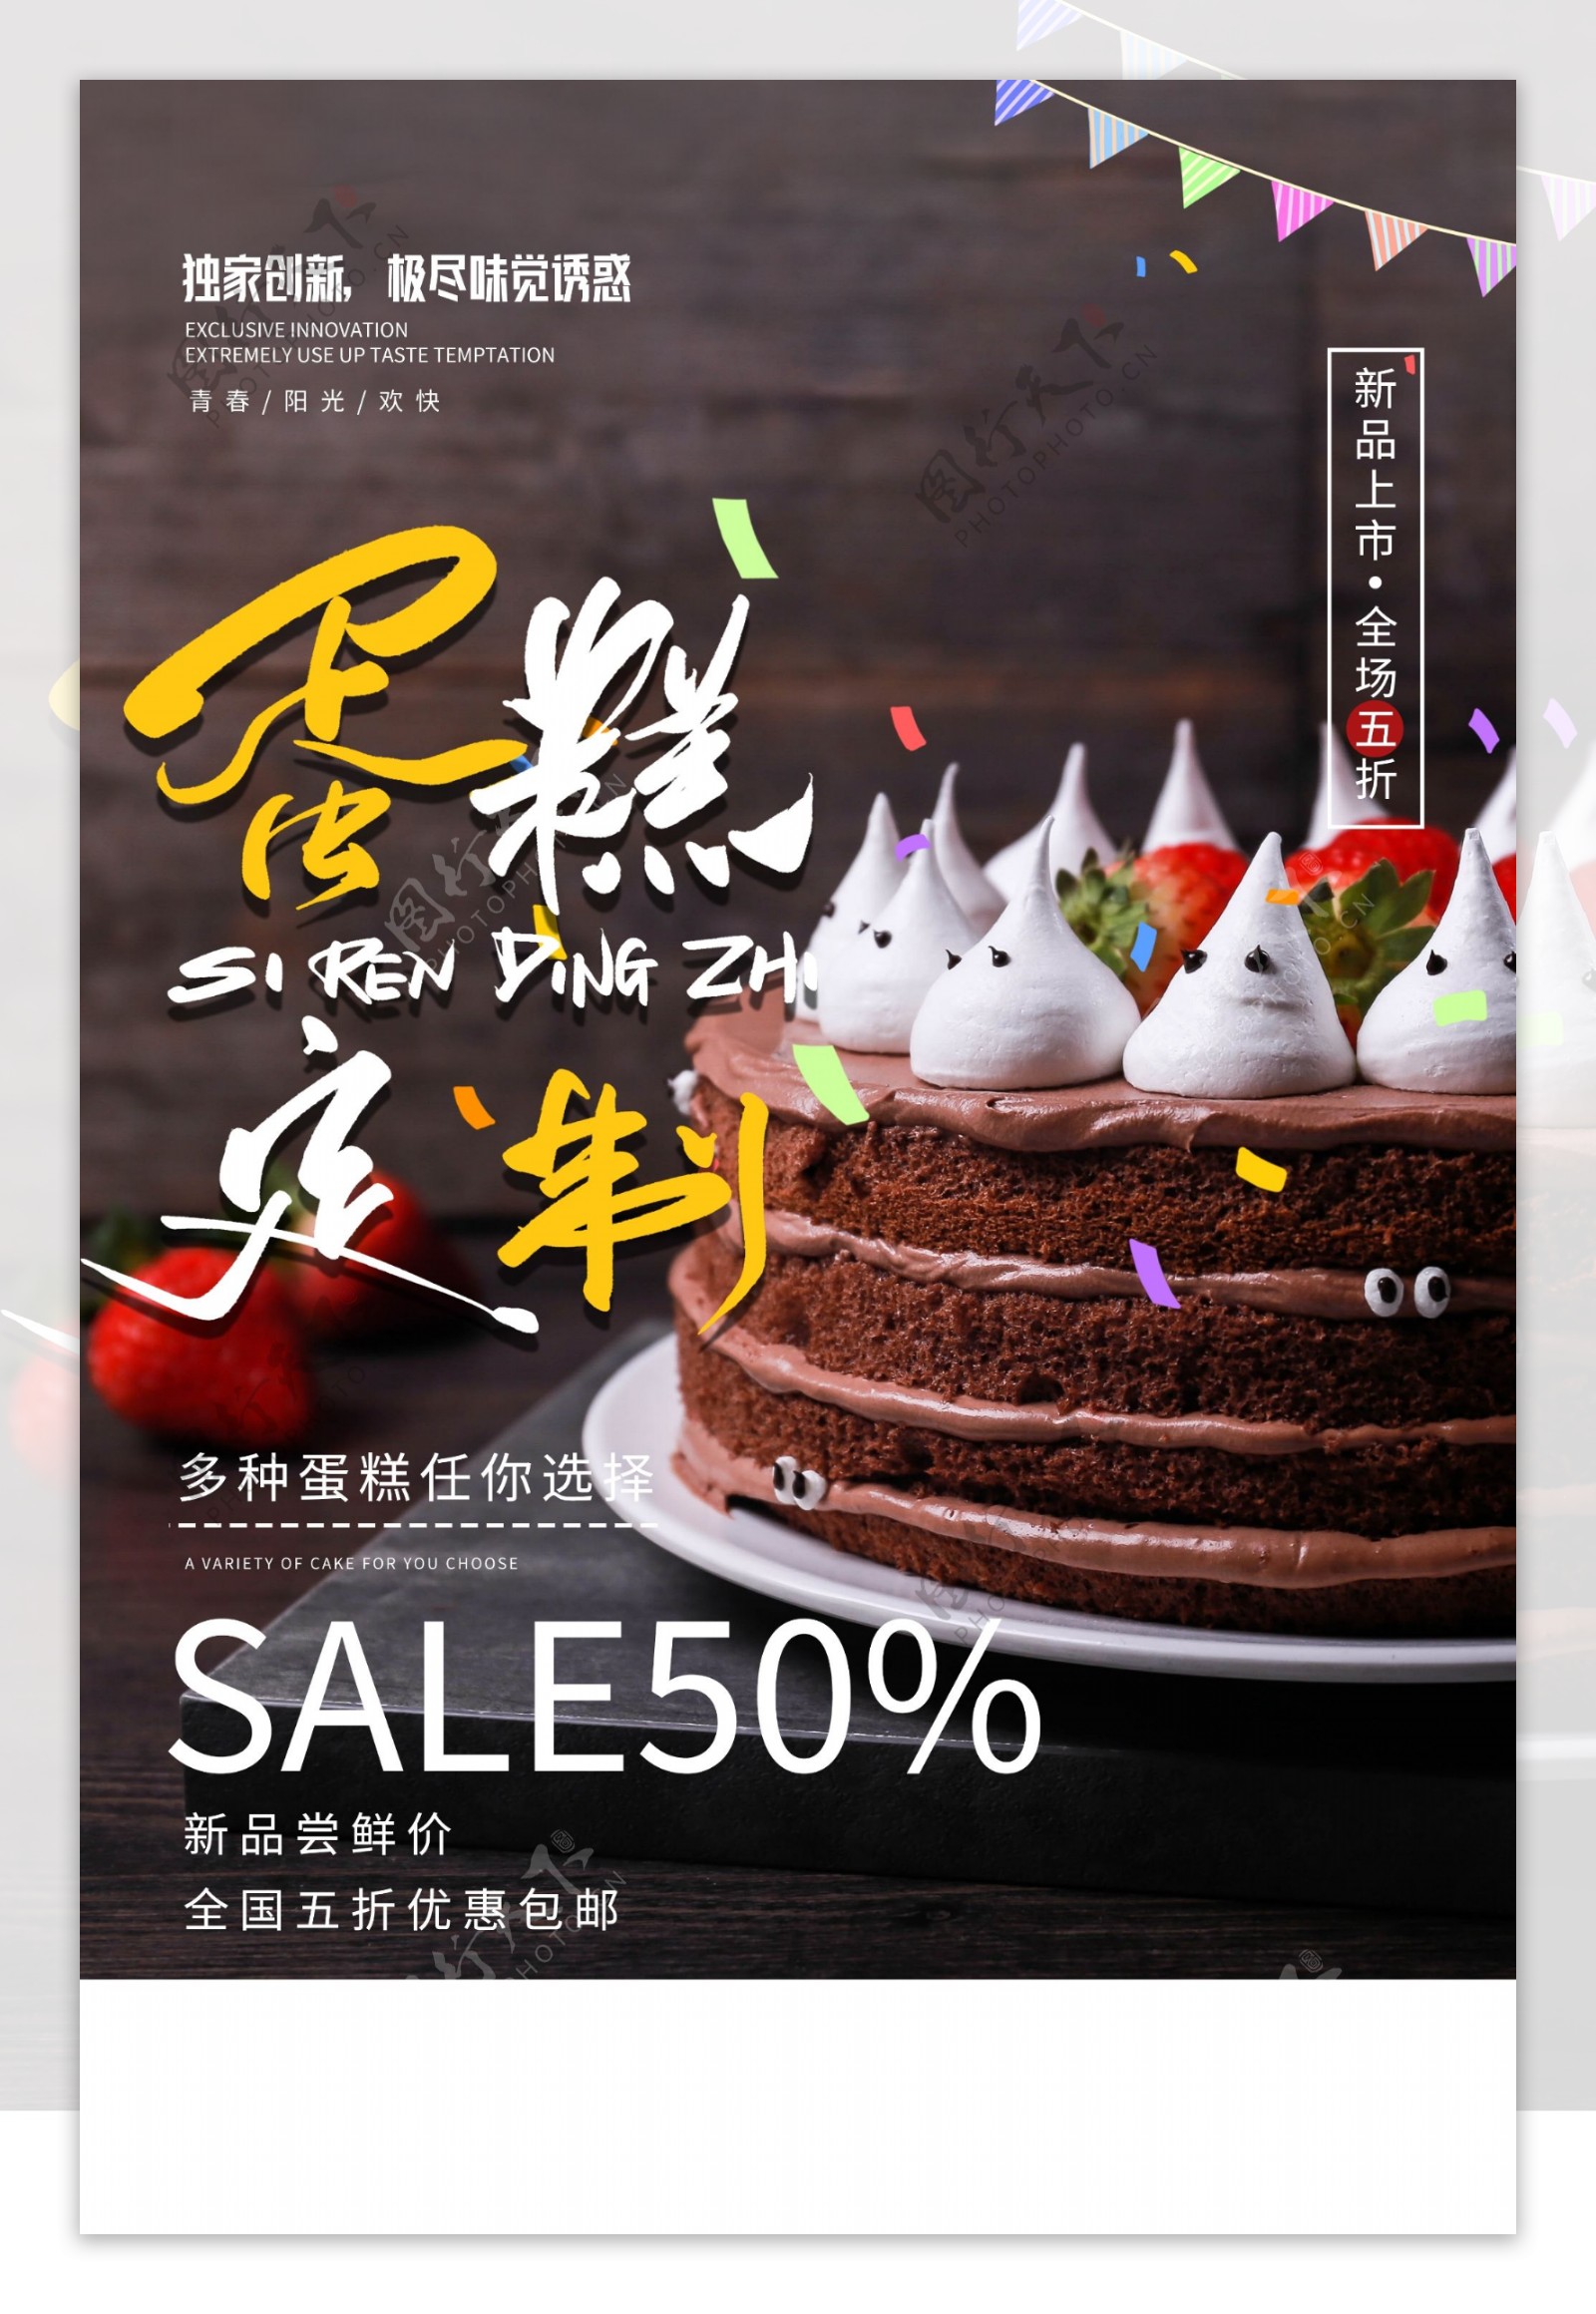 蛋糕甜品定制促销活动宣传海报